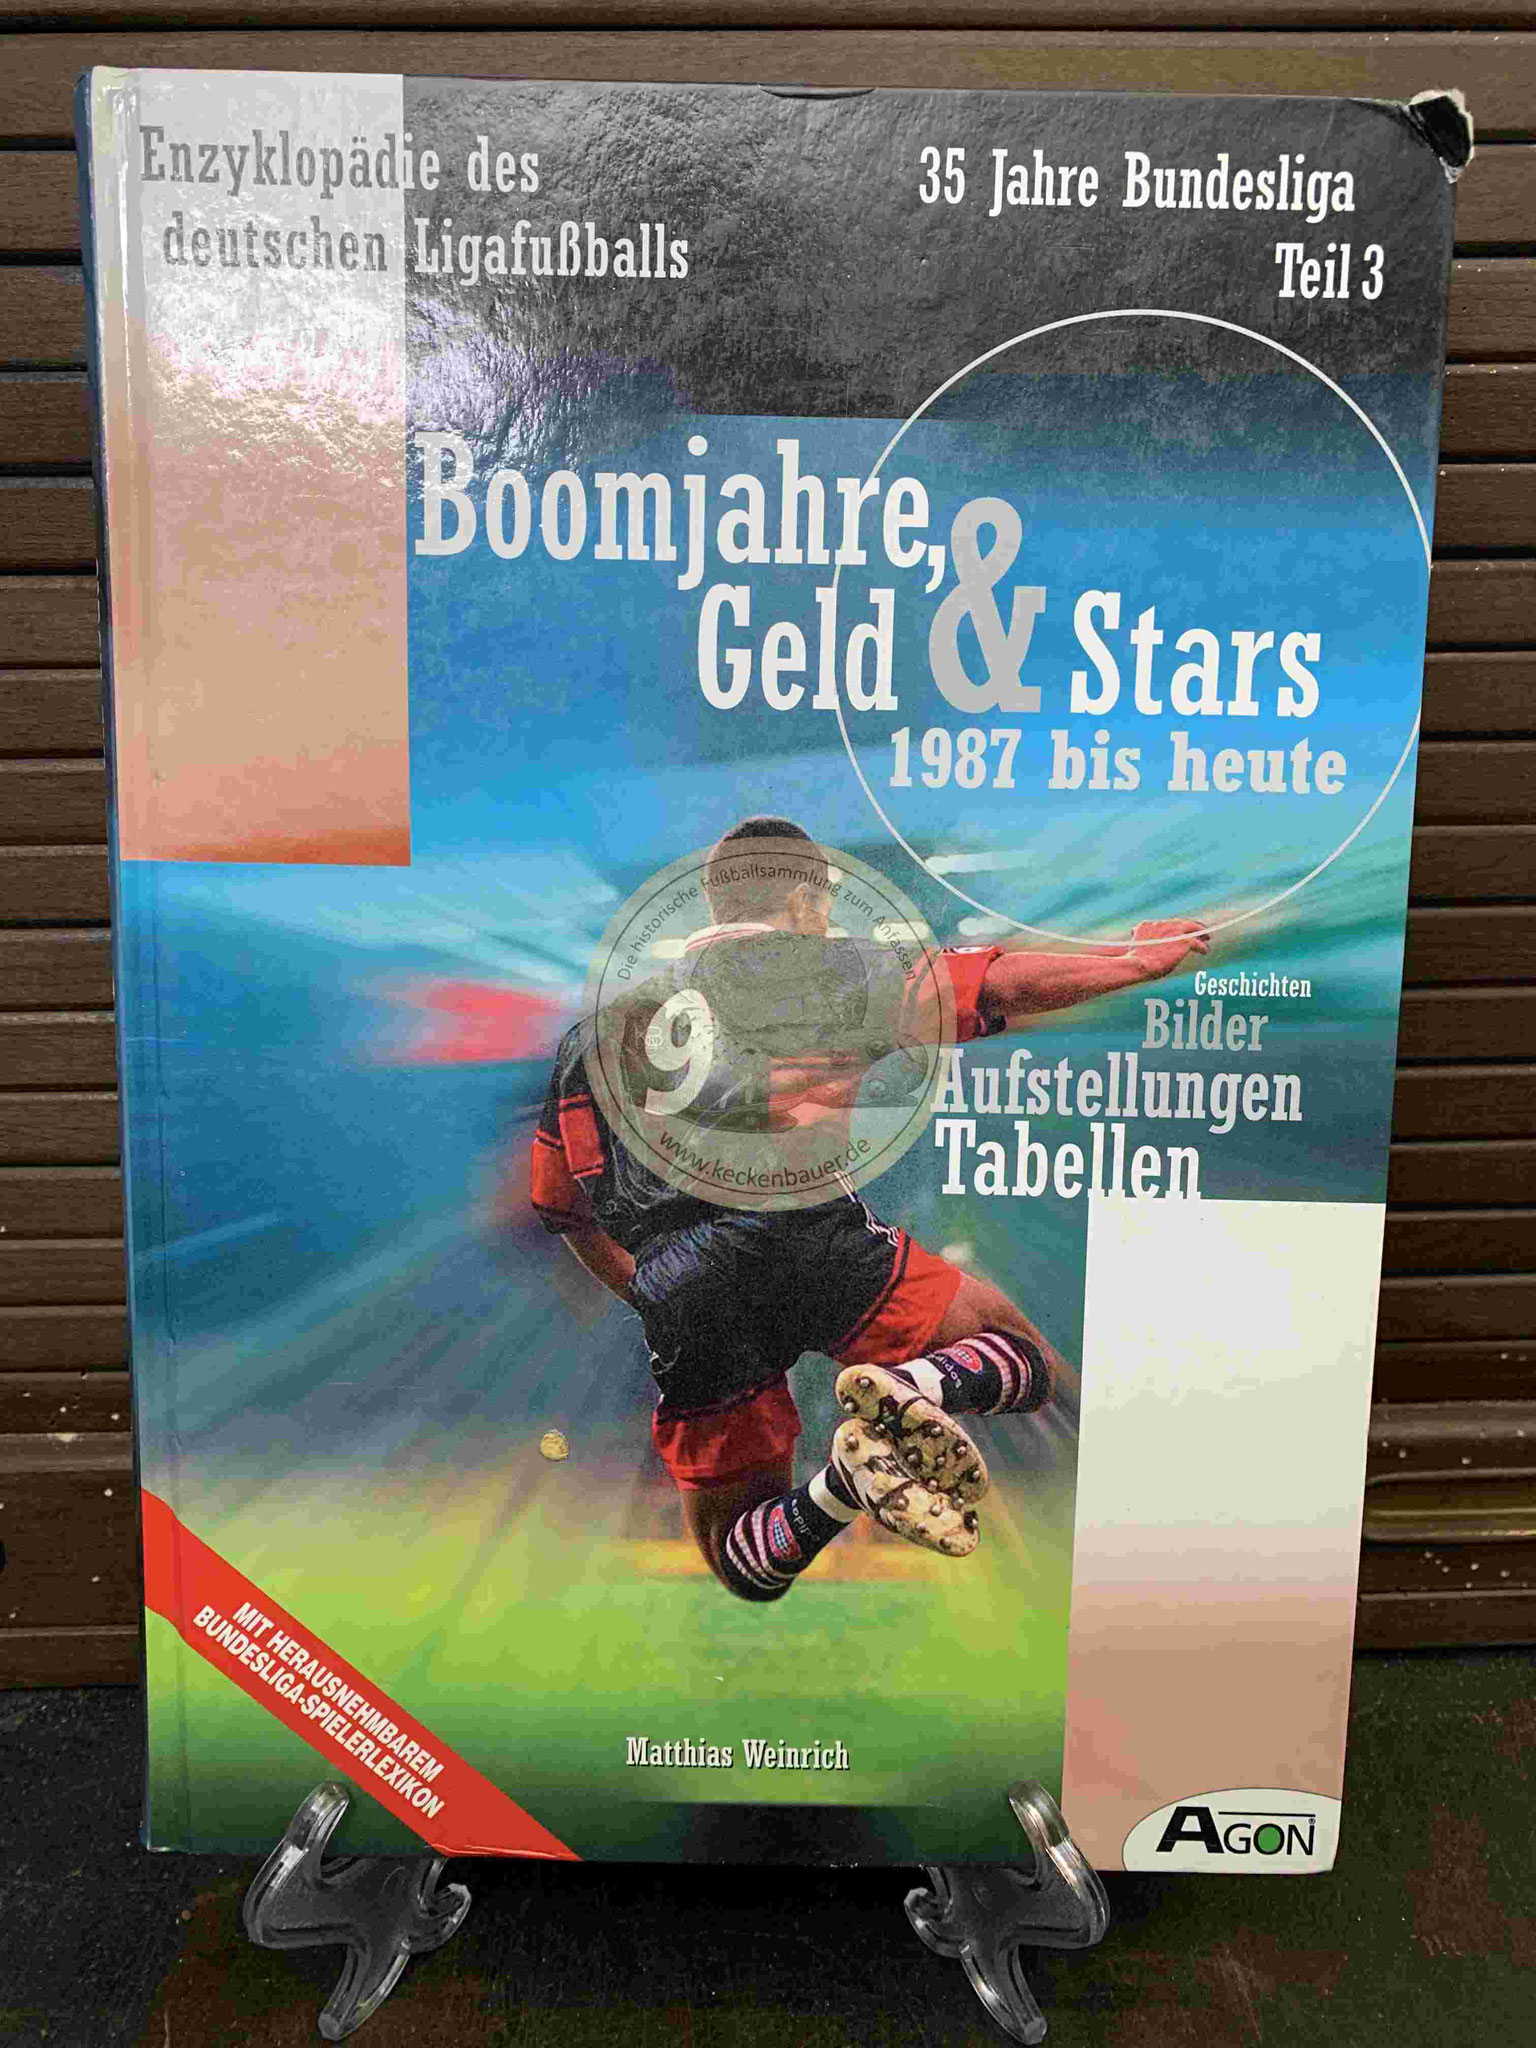 Enzyklopädie des deutschen Ligafußballs "Boomjahre, Geld & Stars aus dem Jahr 1999